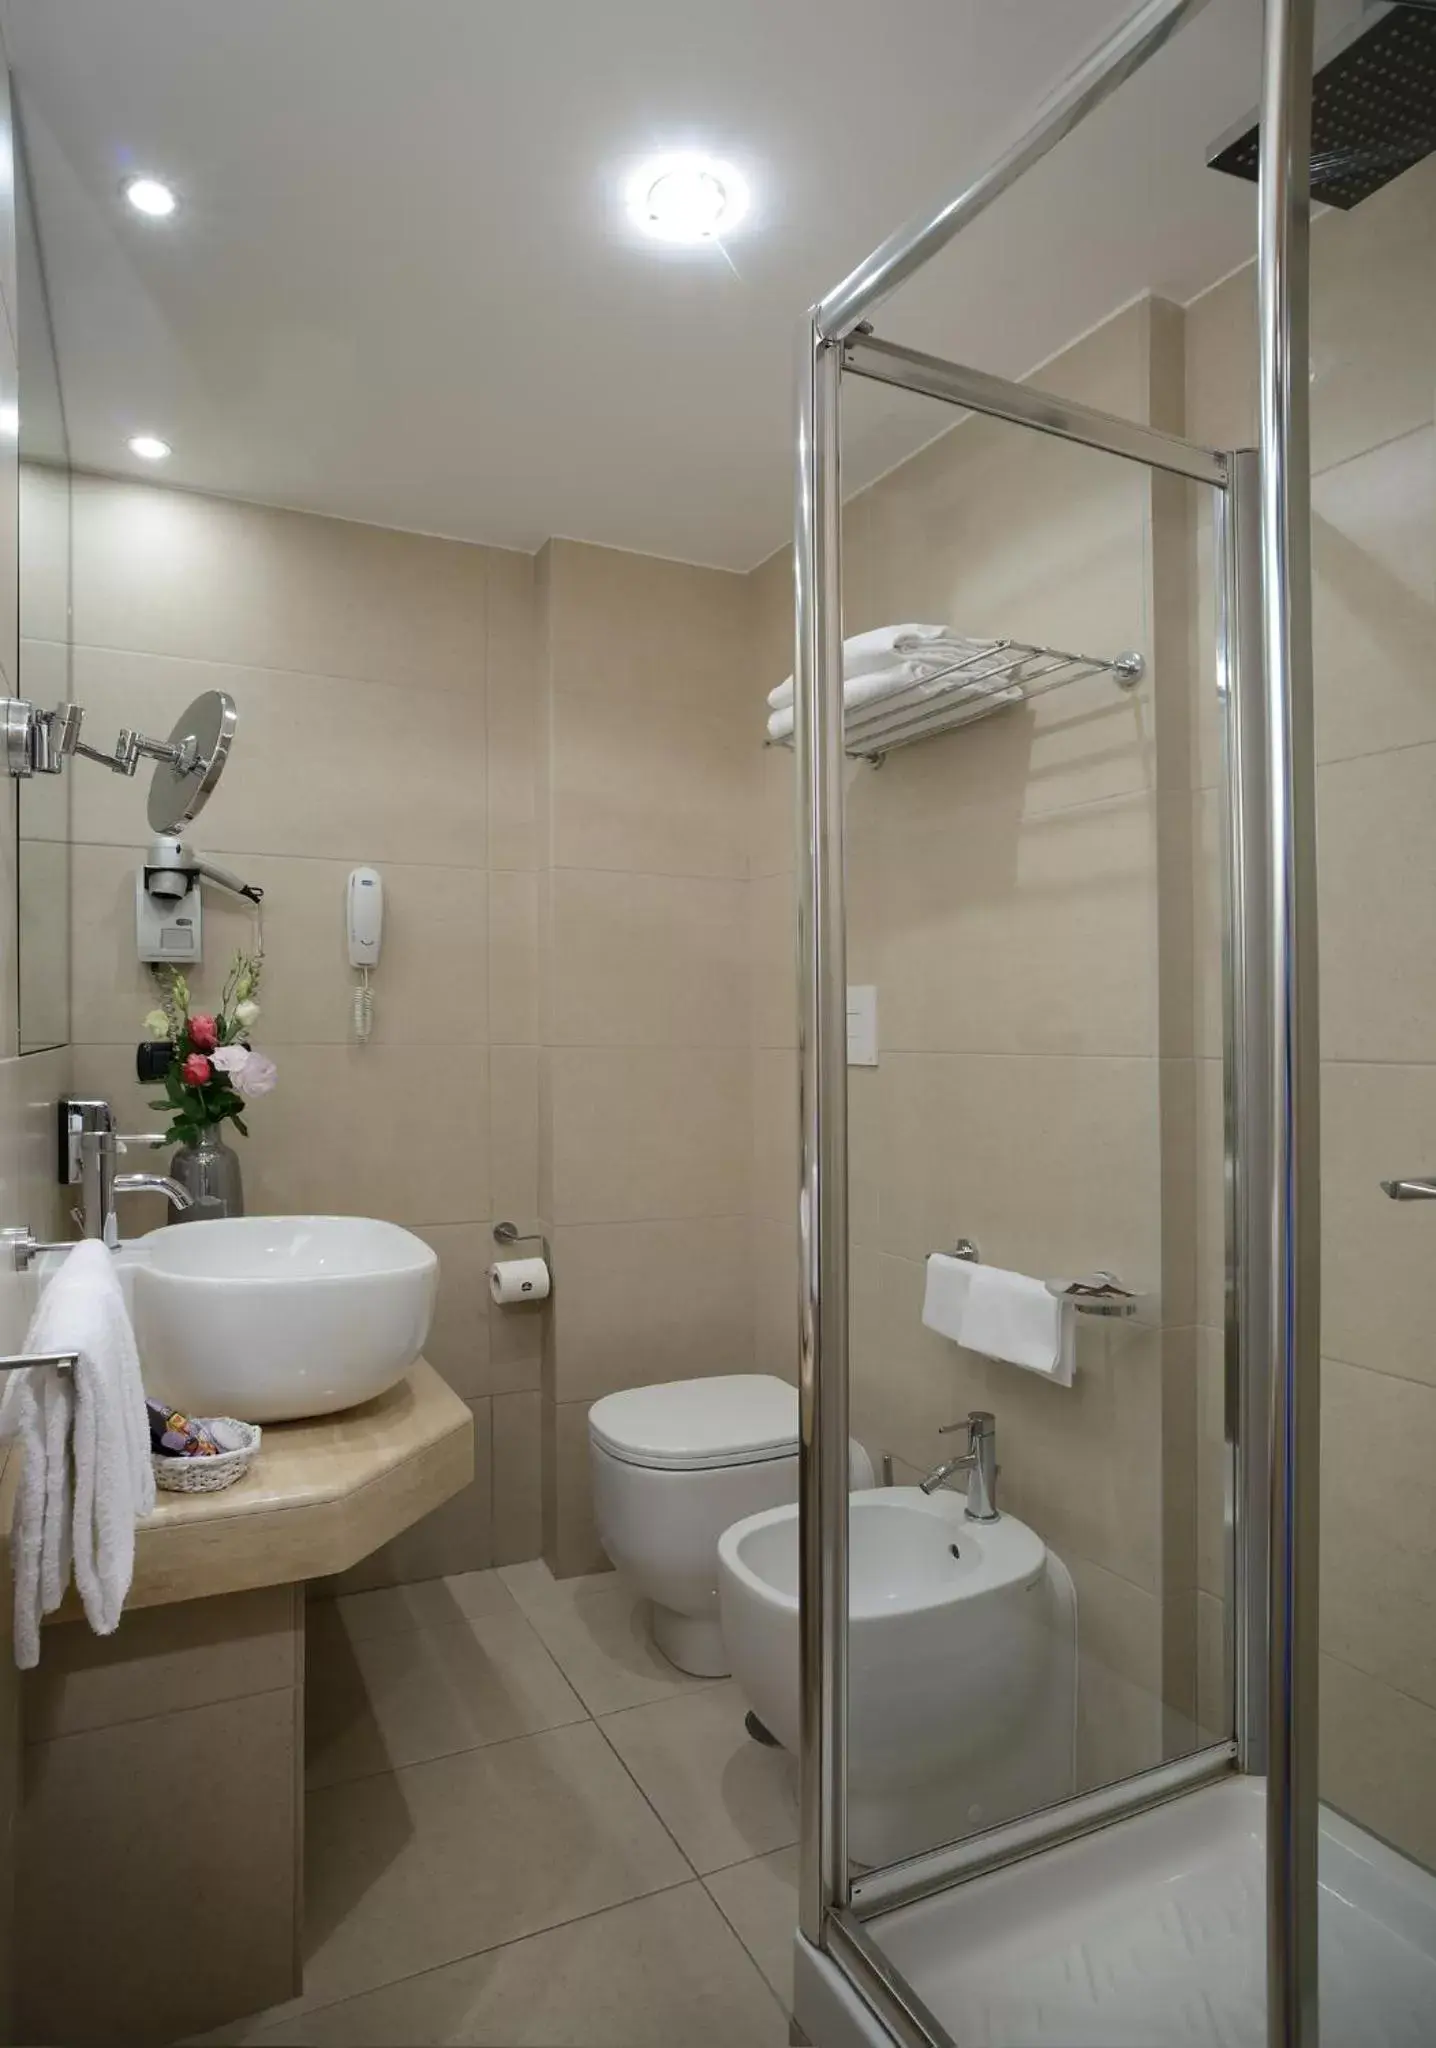 Bathroom in Best Western Hotel Rome Airport